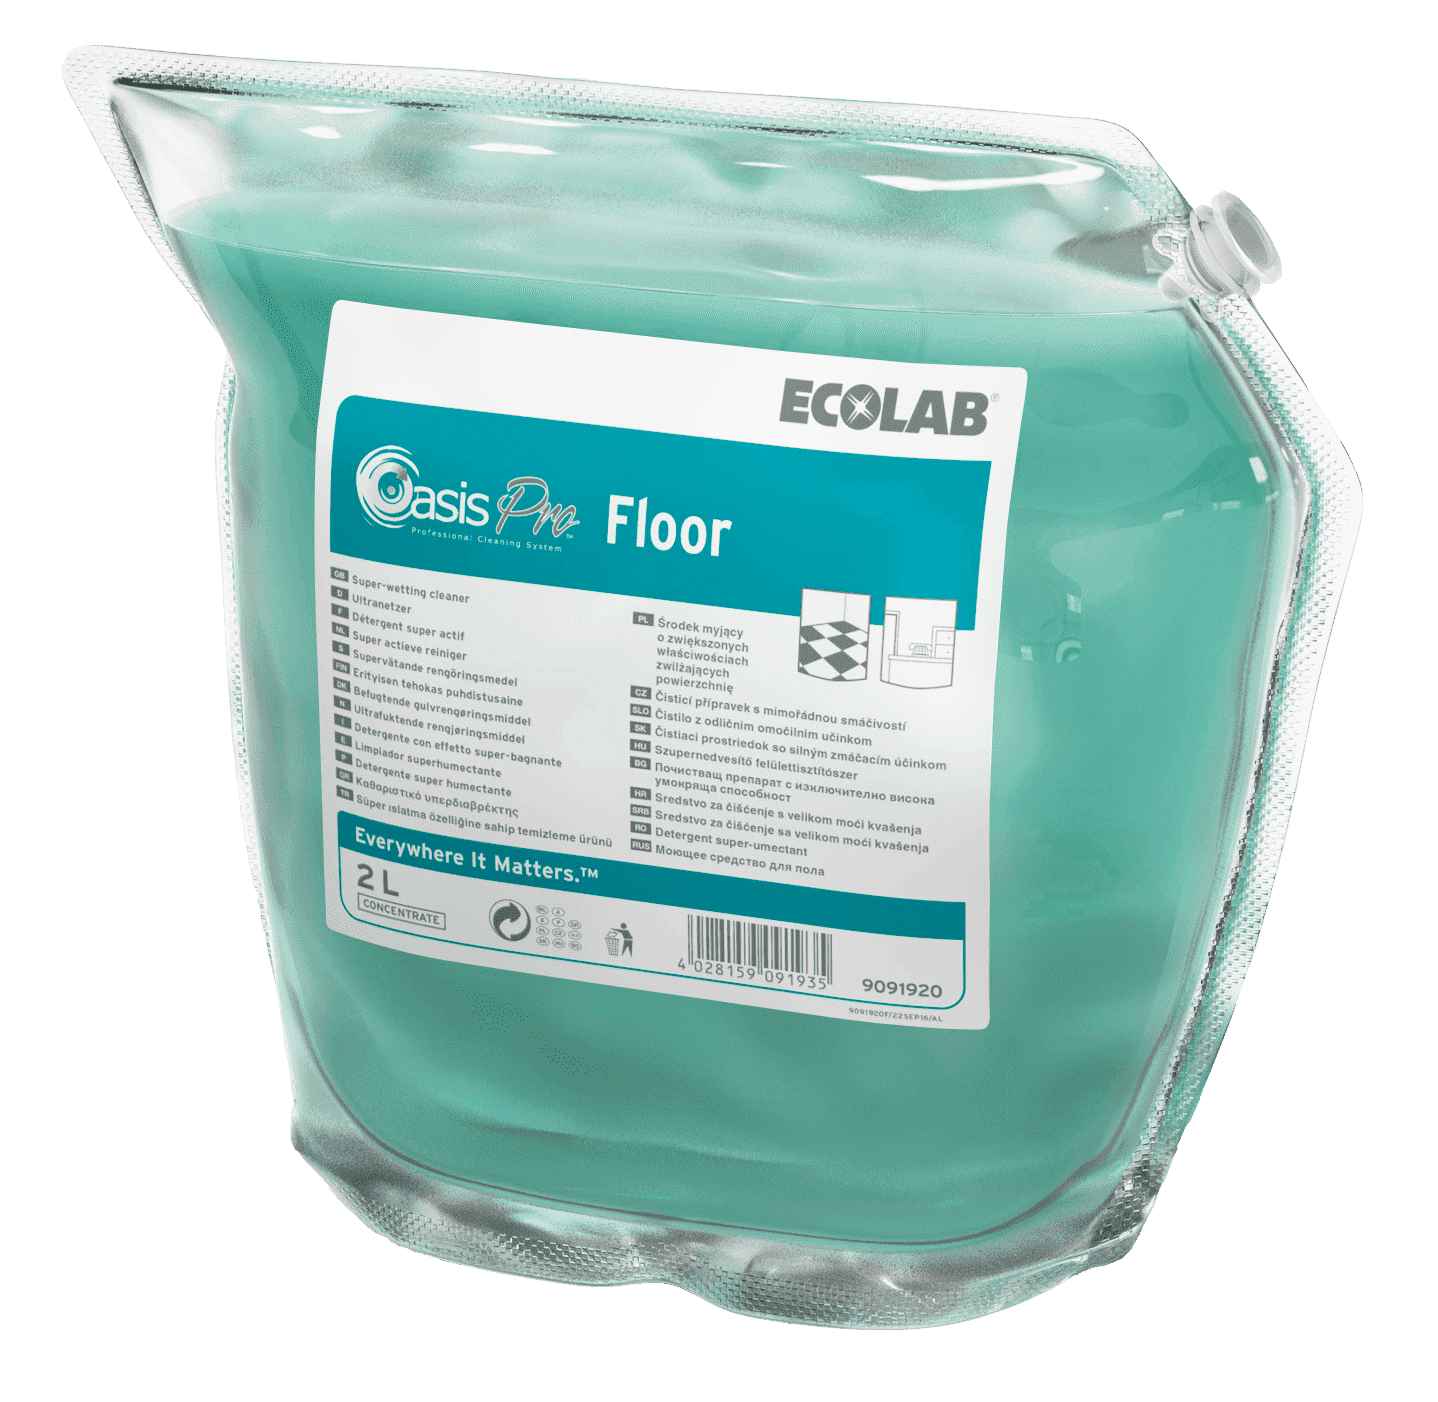 Ecolab Oasis Pro Floor концентрированное моющее средство для ежедневной уборки твердых полов, Клингард